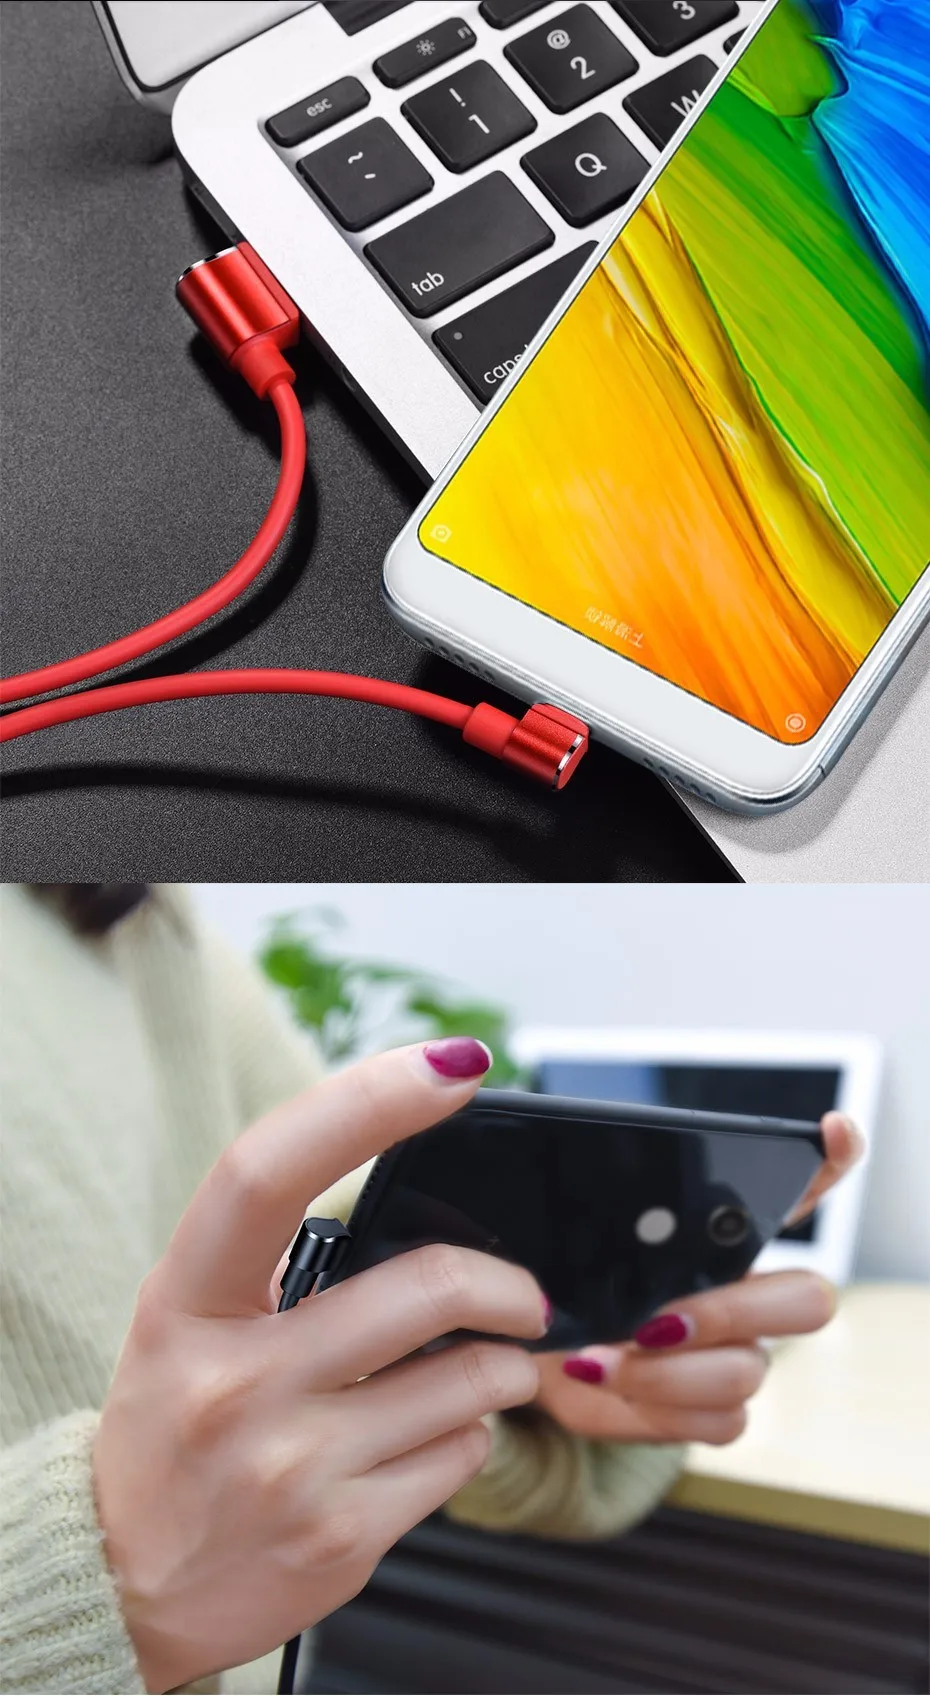 НОСО U37 Micro USB кабель для samsung huawei Xiaomi Android Быстрая зарядка USB кабель для передачи данных Зарядка через usb шнур Microusb Зарядное устройство кабель